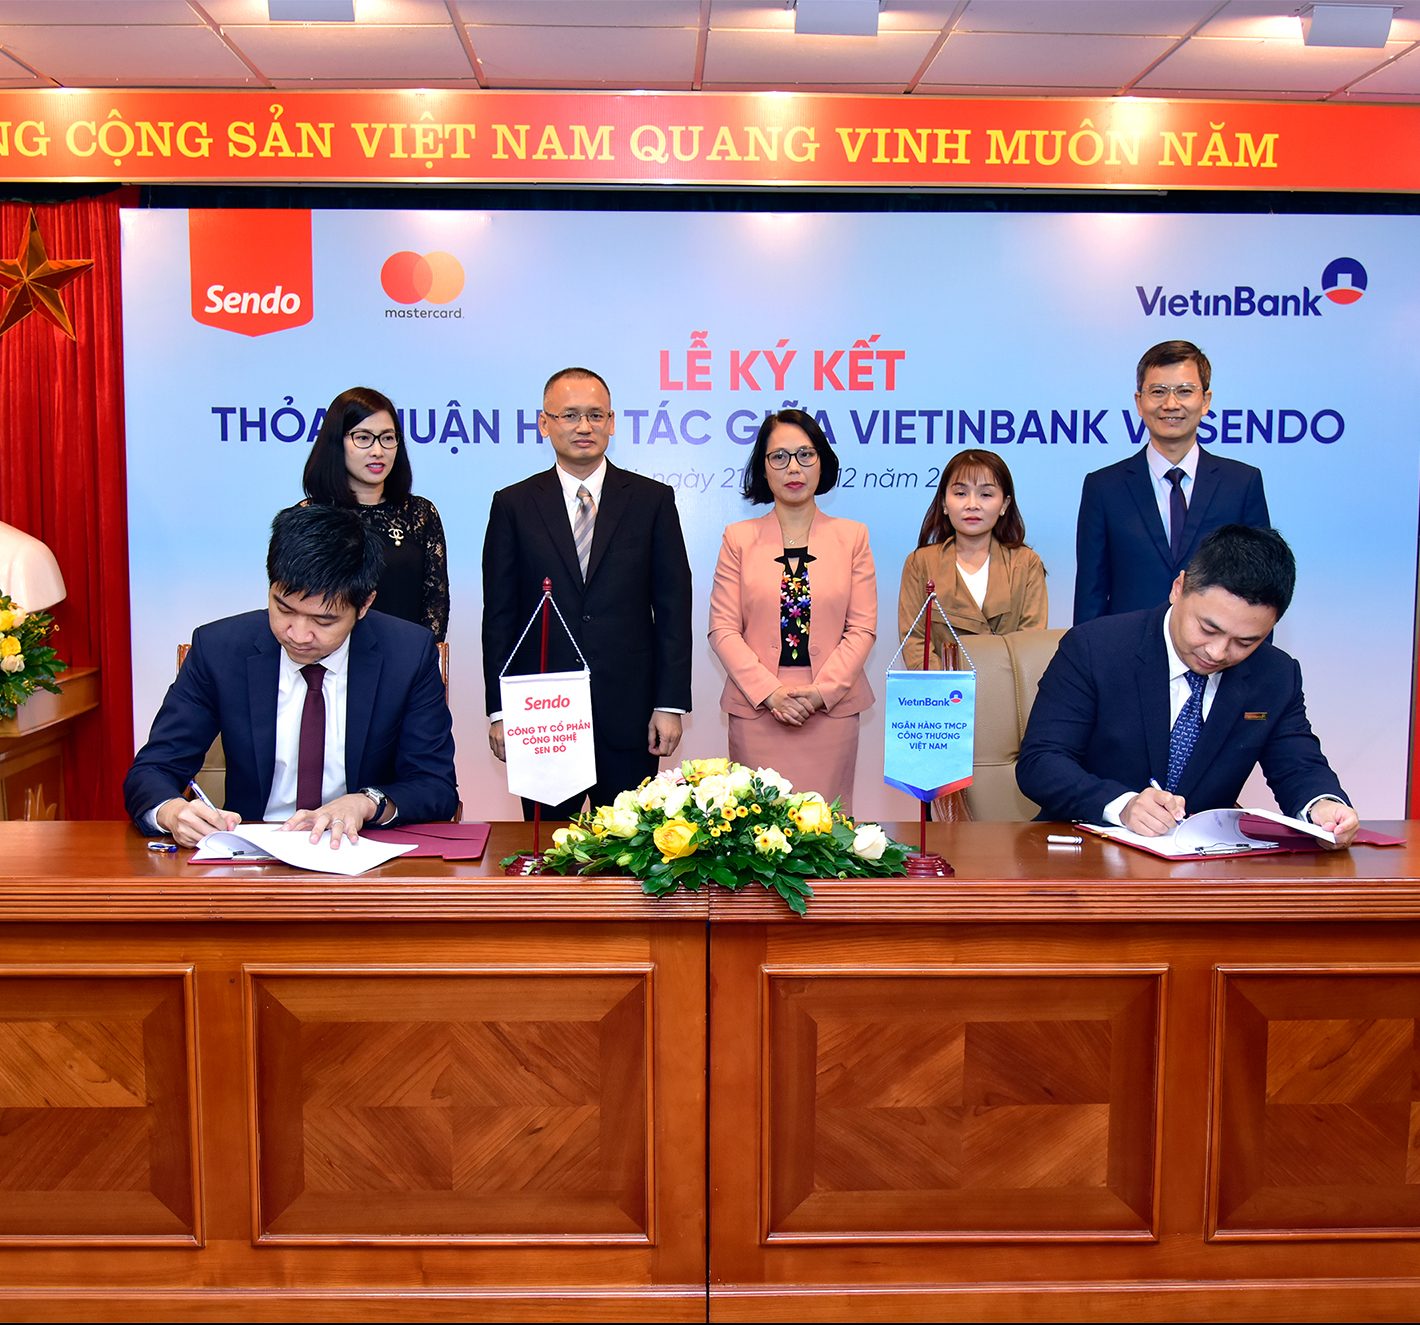 Ngân hàng Vietinbank bắt tay cùng sàn thương mại điện tử Sendo